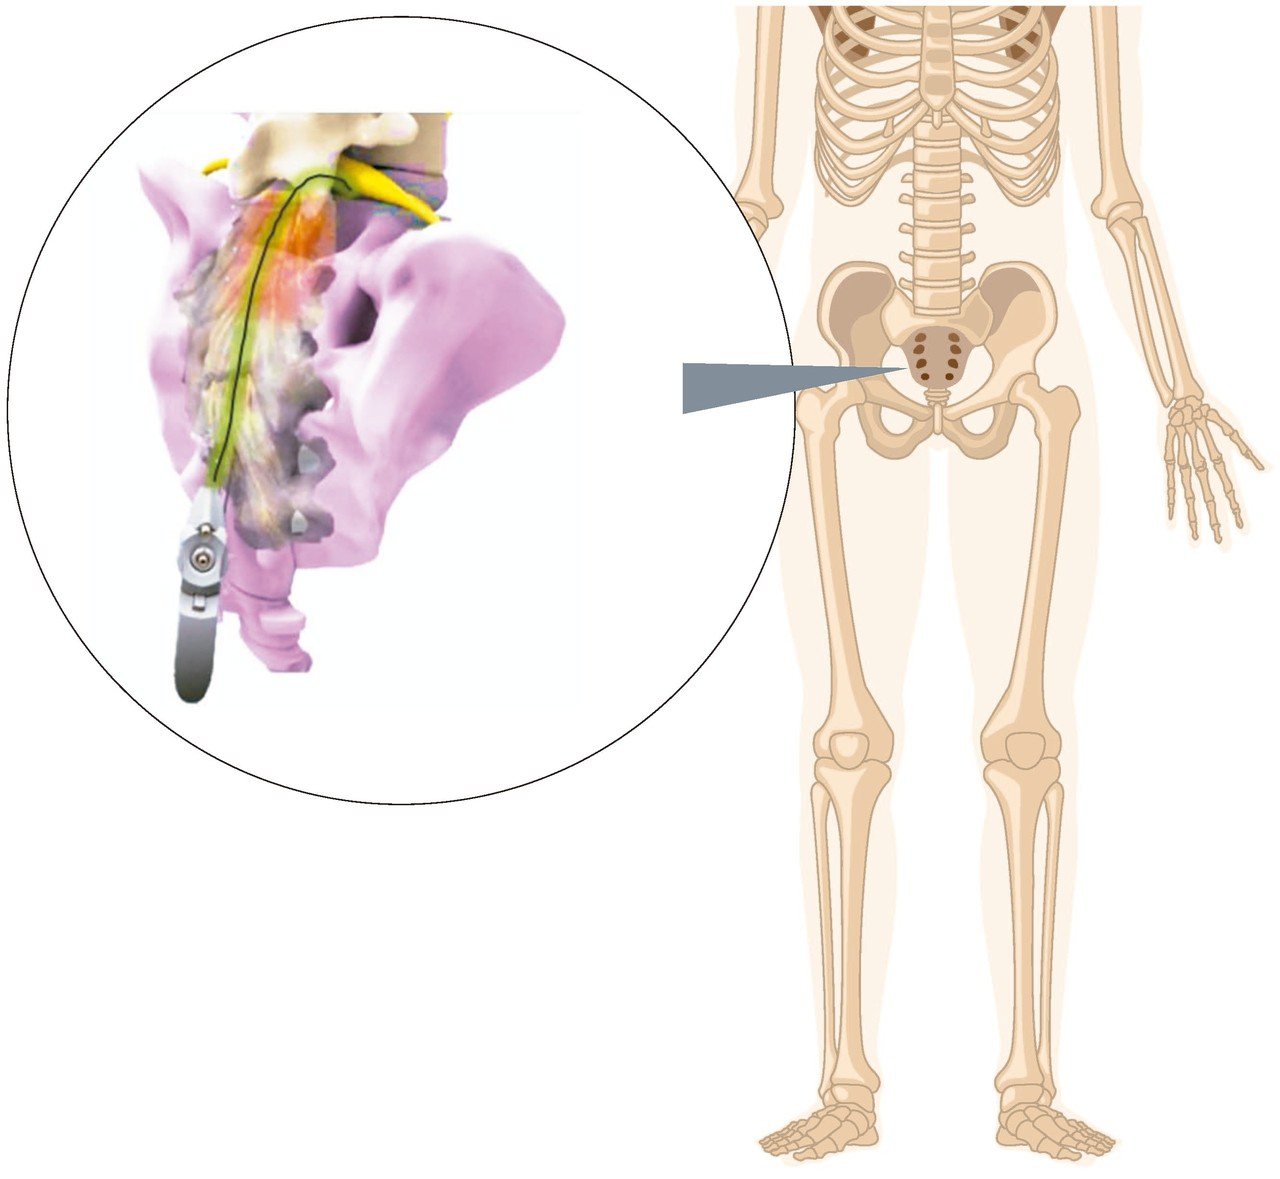 「脊內導管」從尾椎孔將進入「硬脊膜上腔」中，可以注射藥物及分離沾黏組織。